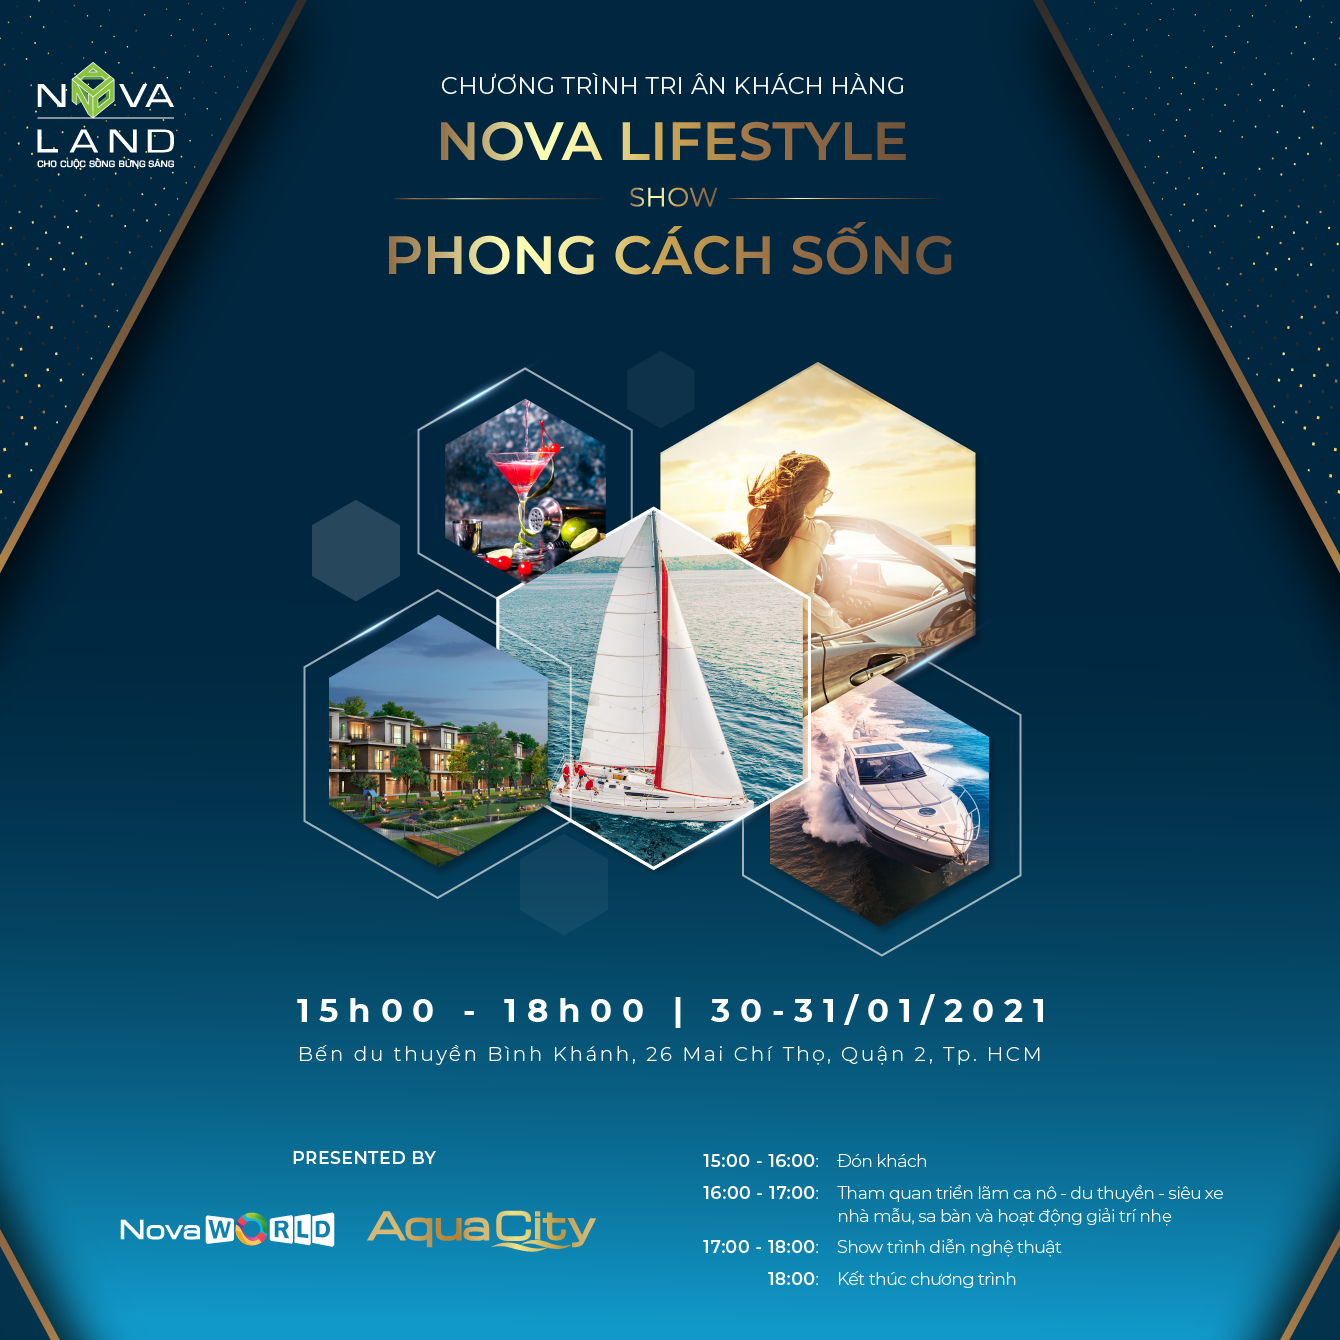 Nova Lifestyle –Show Phong Cách Sống giúp khách hàng hình dung cuộc sống và những kỳ nghỉ dưỡng giàu trải nghiệm trong tương lai tại các dự án của Novaland